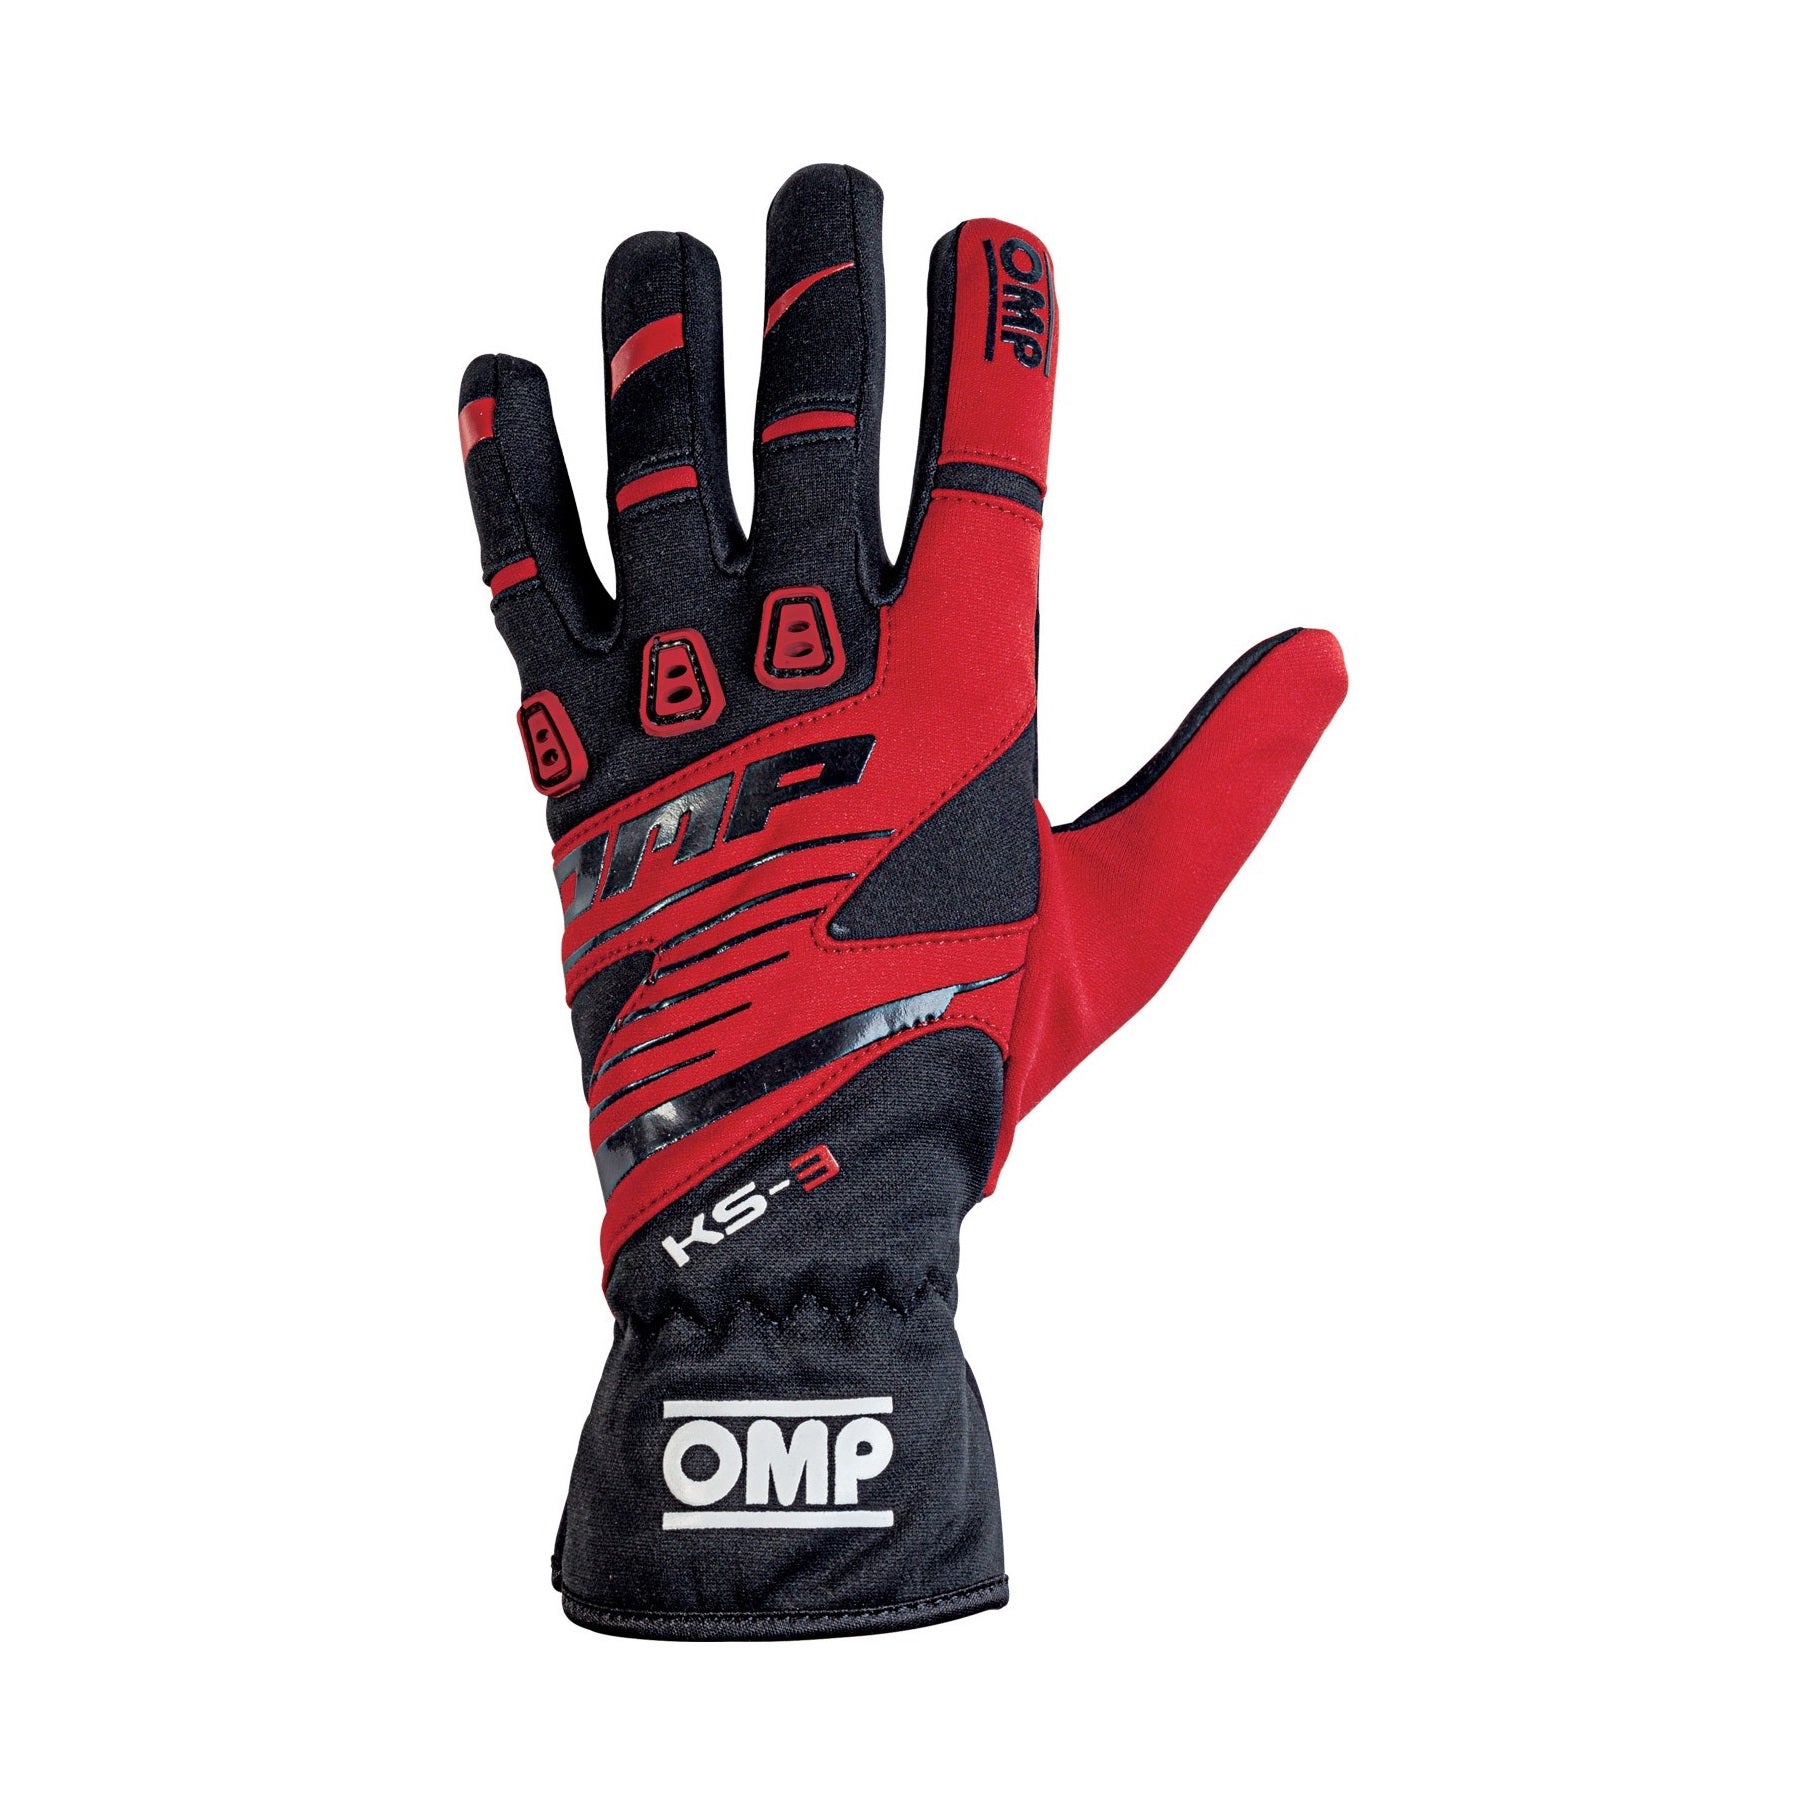 OMP KS-3 Gloves